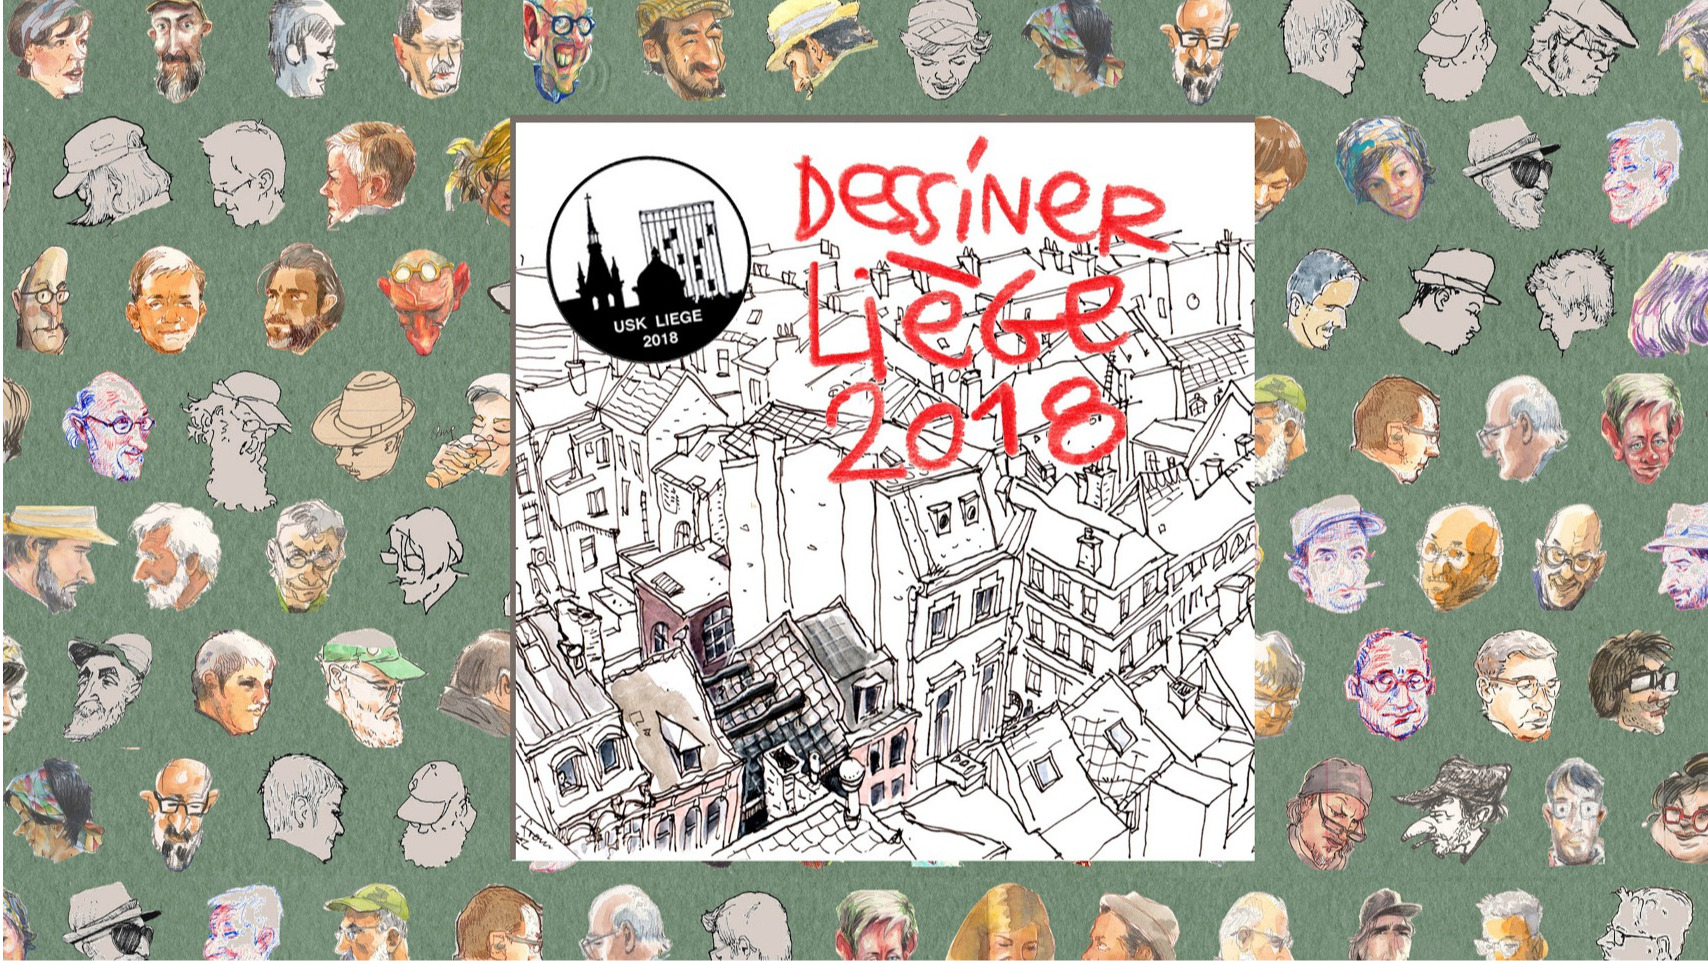 Emulation - Liège des Urban Sketchers 2018 (exposition et présentation du  carnet dans le cadre de en Piste ! 2019)